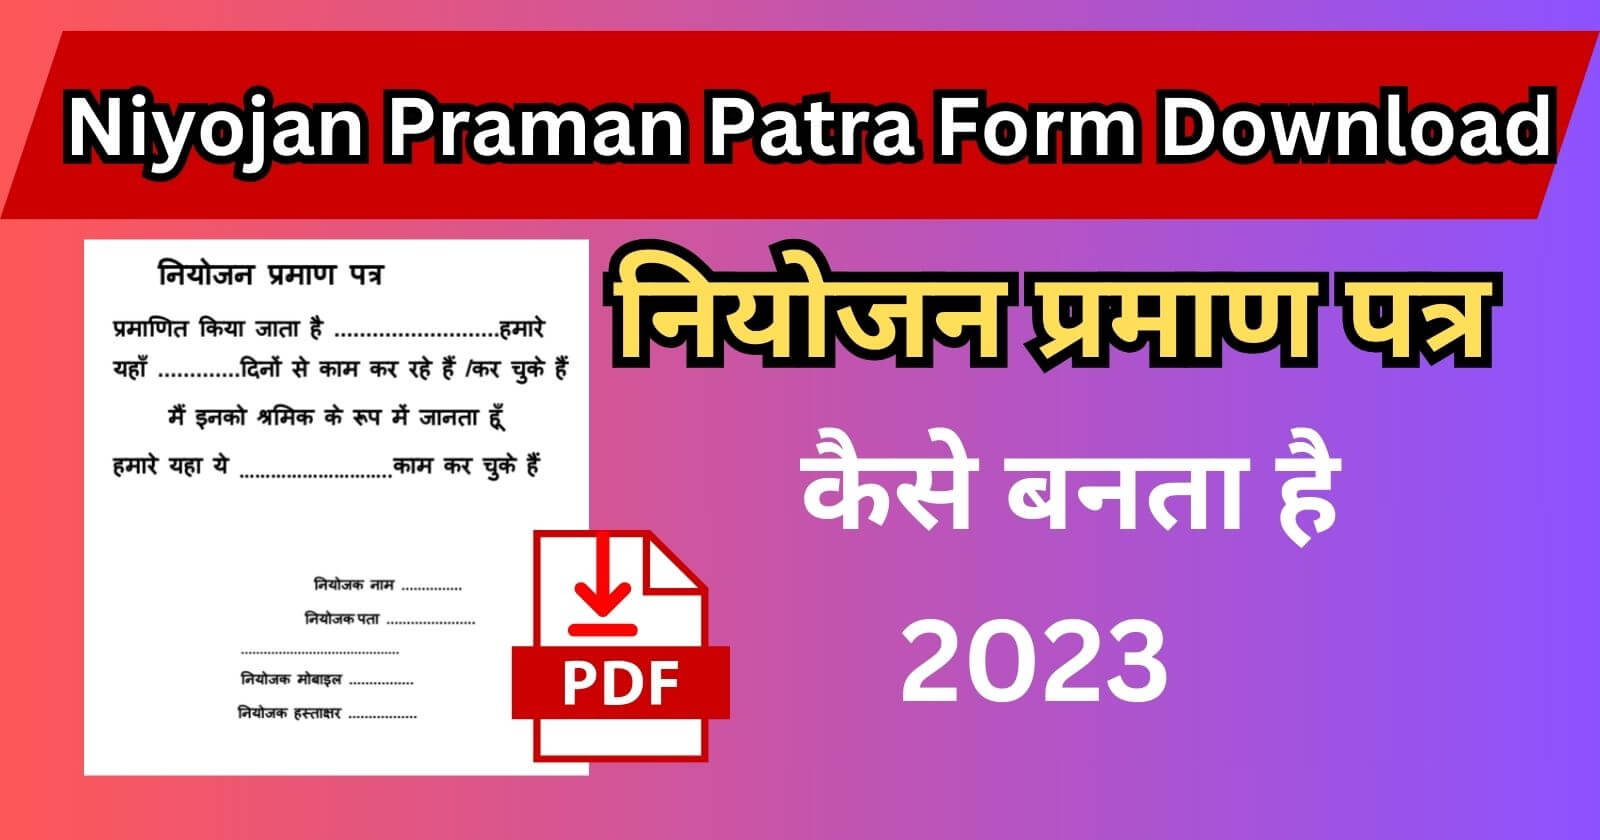 Niyojan Praman Patra Form Download